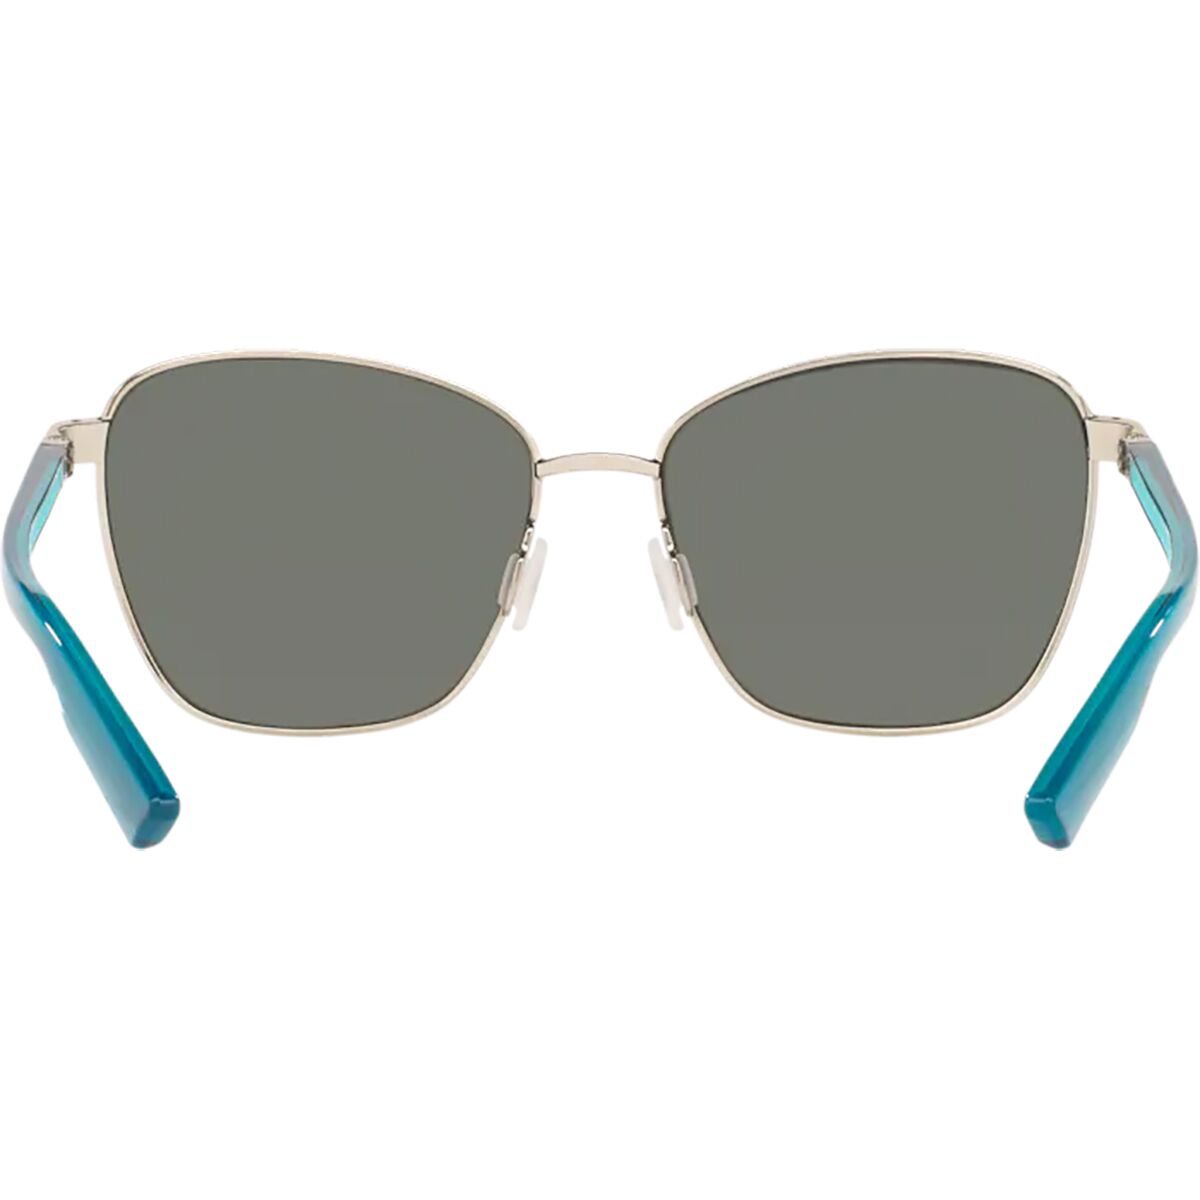 Поляризованные солнцезащитные очки Paloma 580P Costa